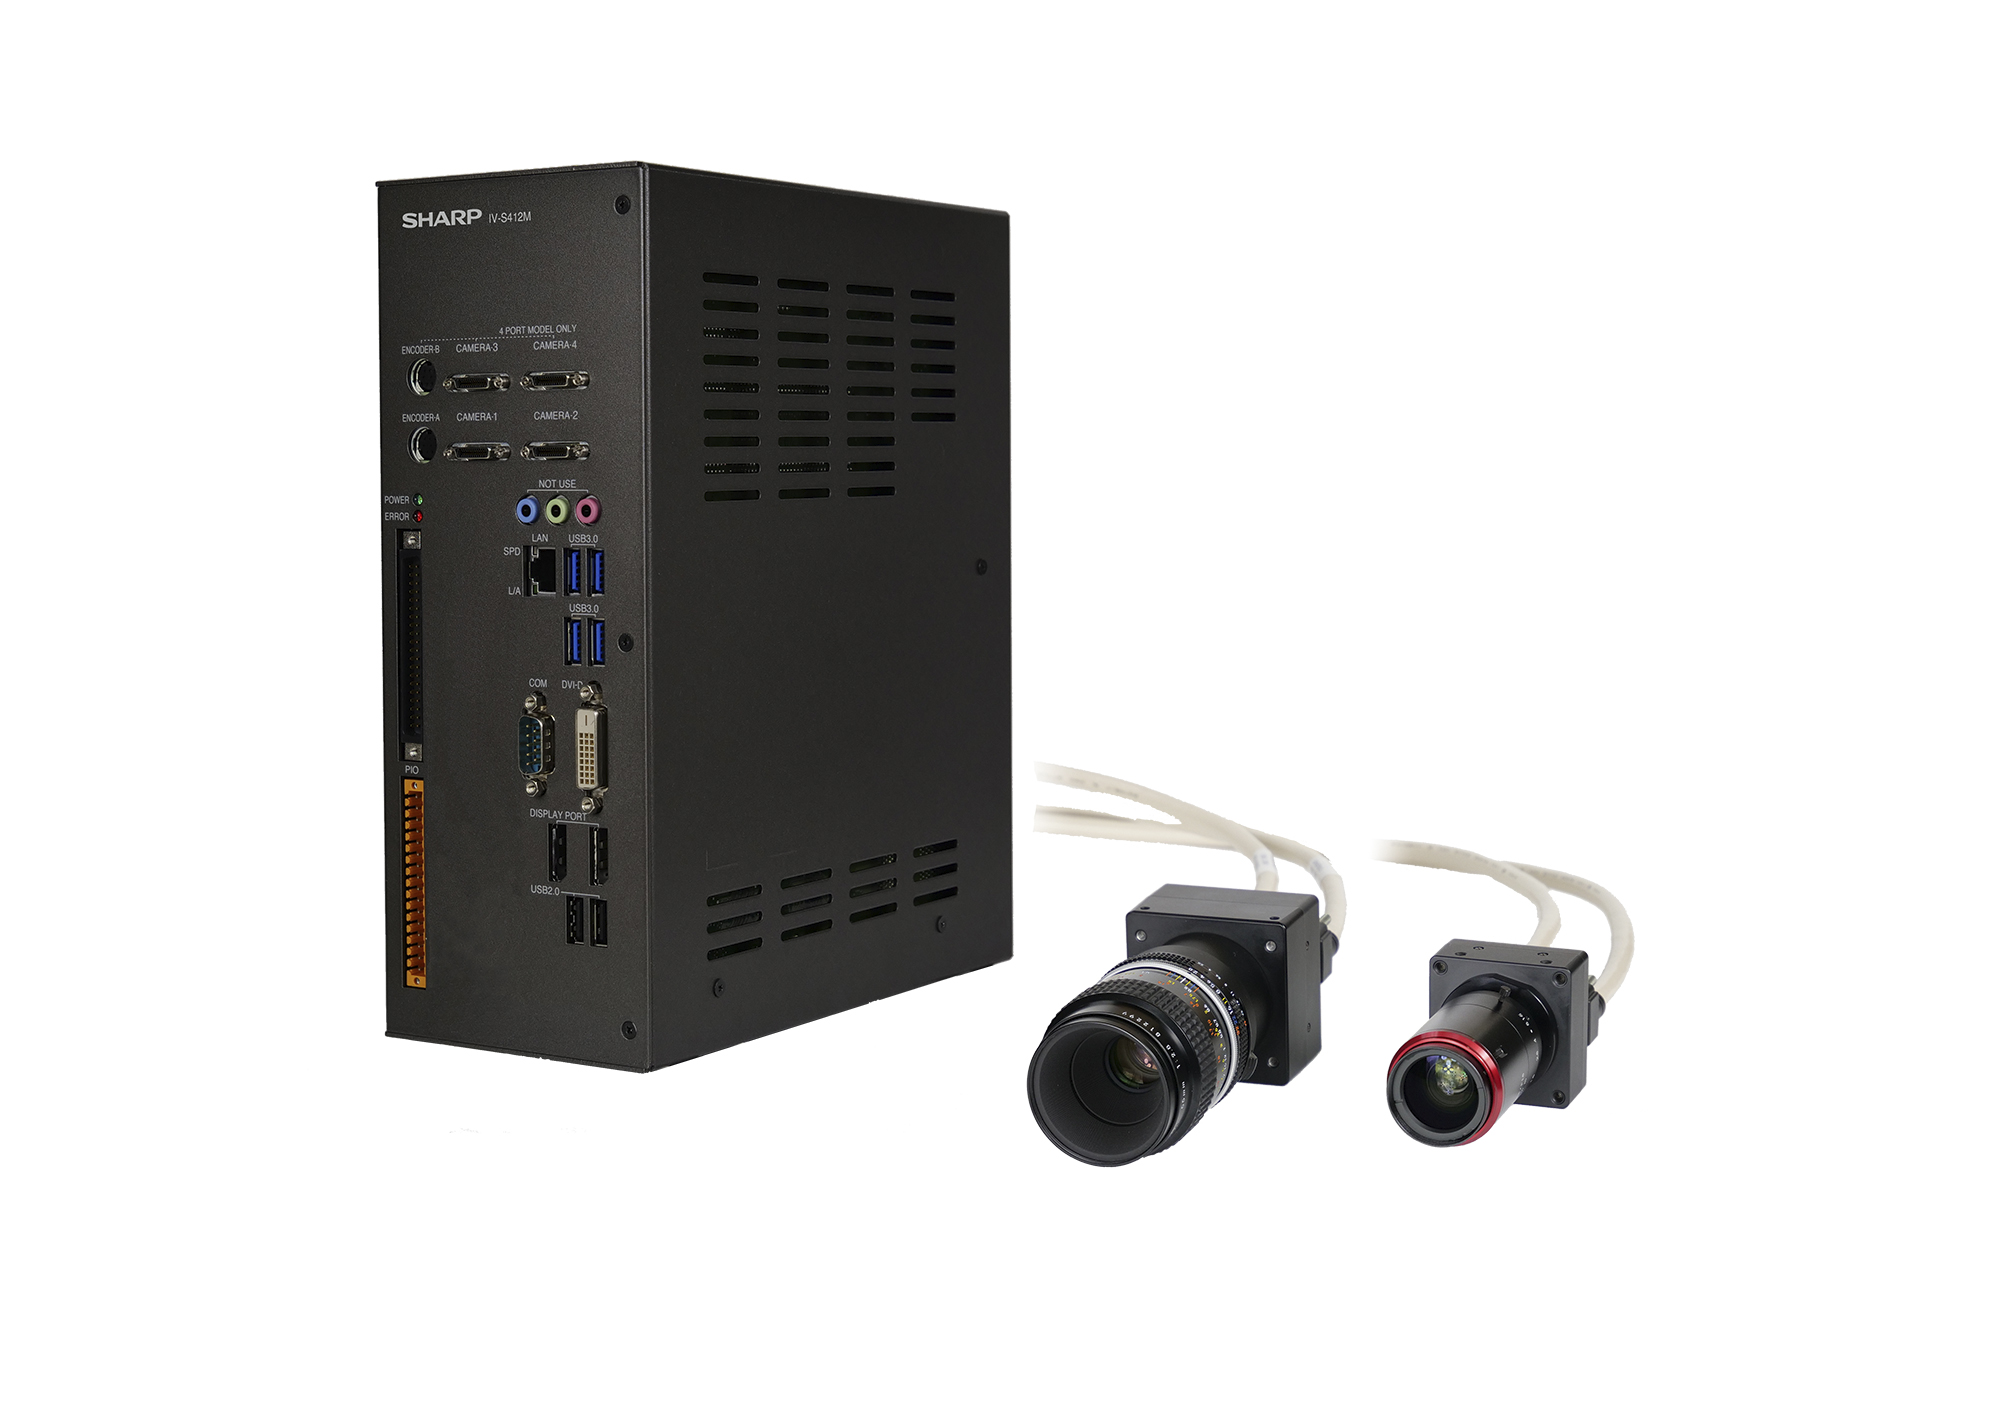 画像センサカメラ Iv S402m カメラ最大2台 Iv S412m カメラ最大4台 シャープ株式会社 のカタログ無料ダウンロード 製造業向けカタログポータル Aperza Catalog アペルザカタログ